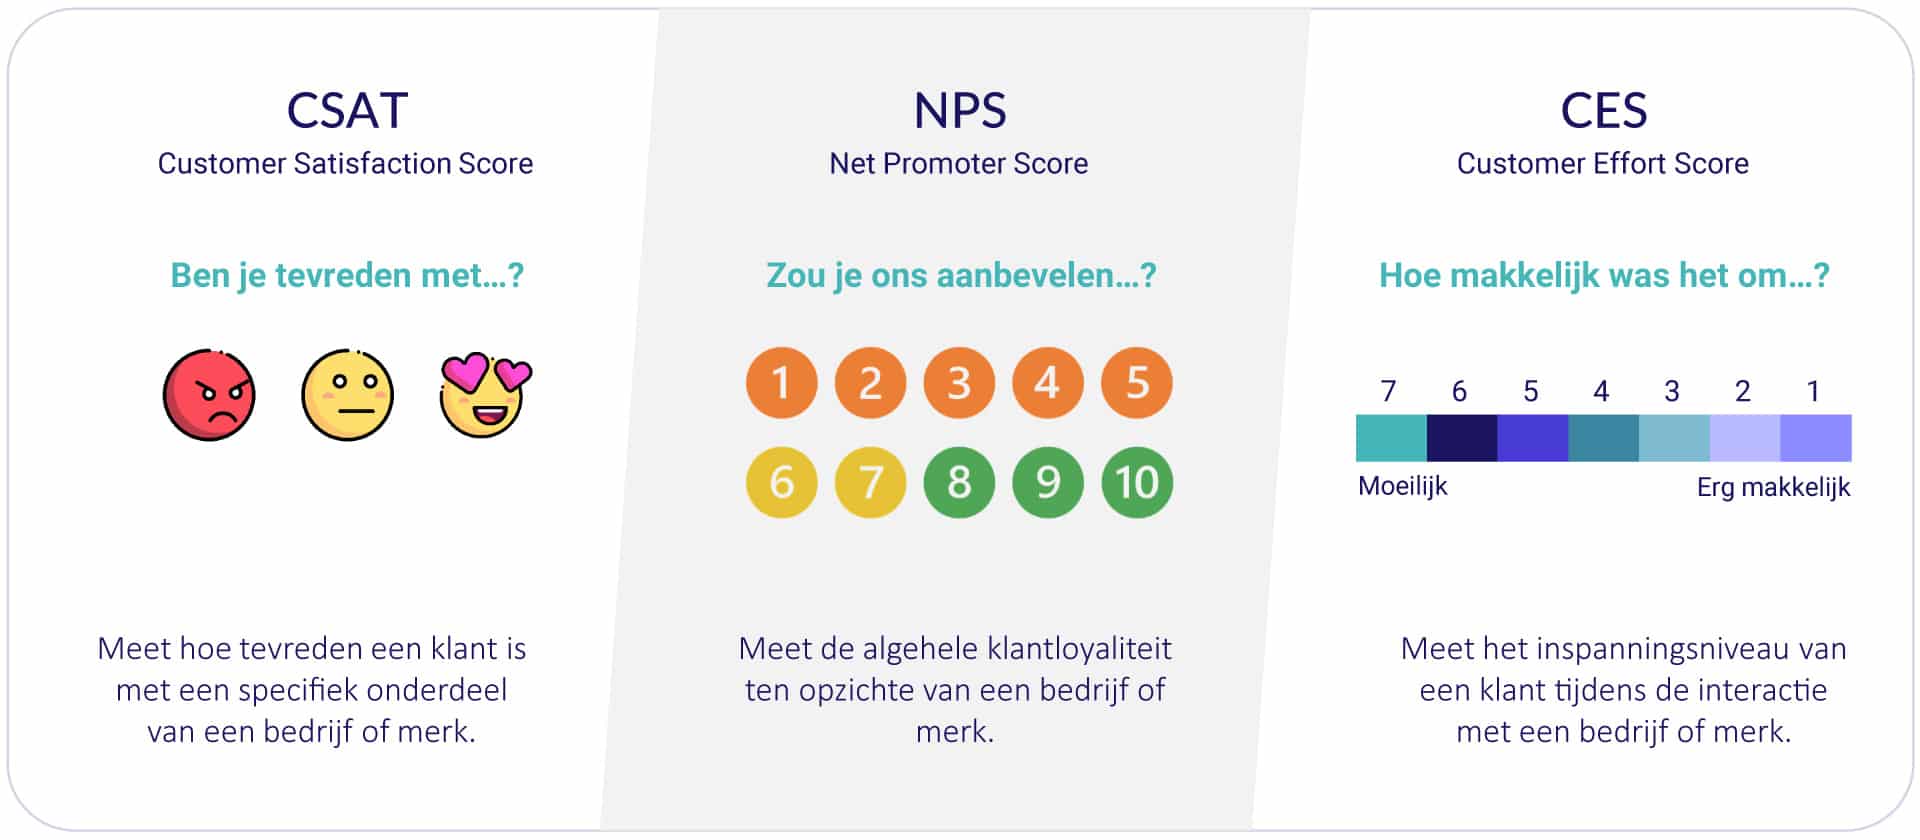 NPS CES CSAT score in klanttevredenheid